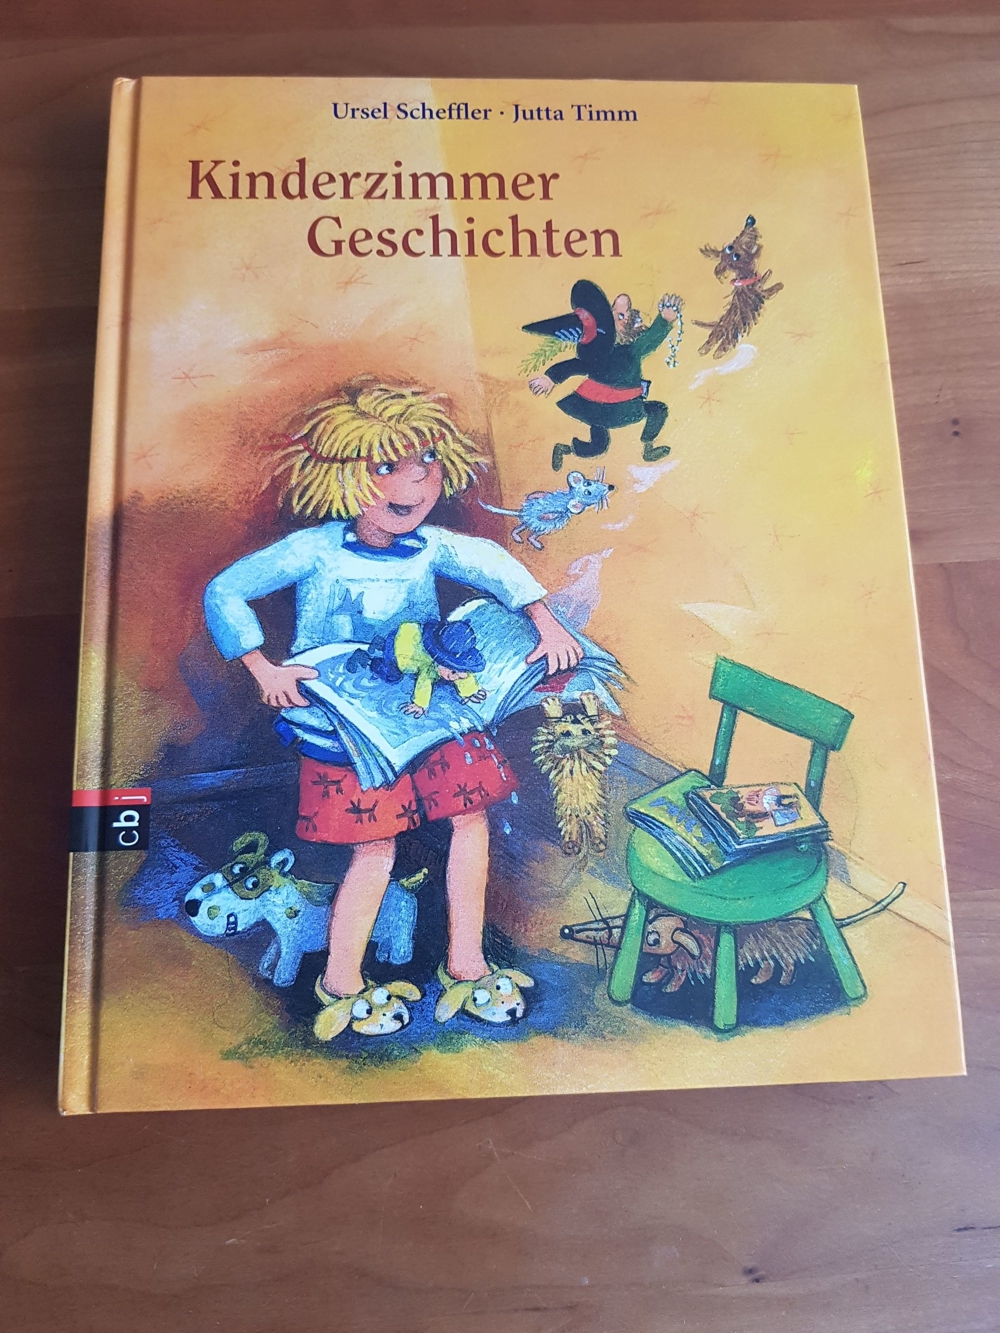 Kinderzimmergeschichten - Vorlesegeschichten U.Scheffler + J.Timm